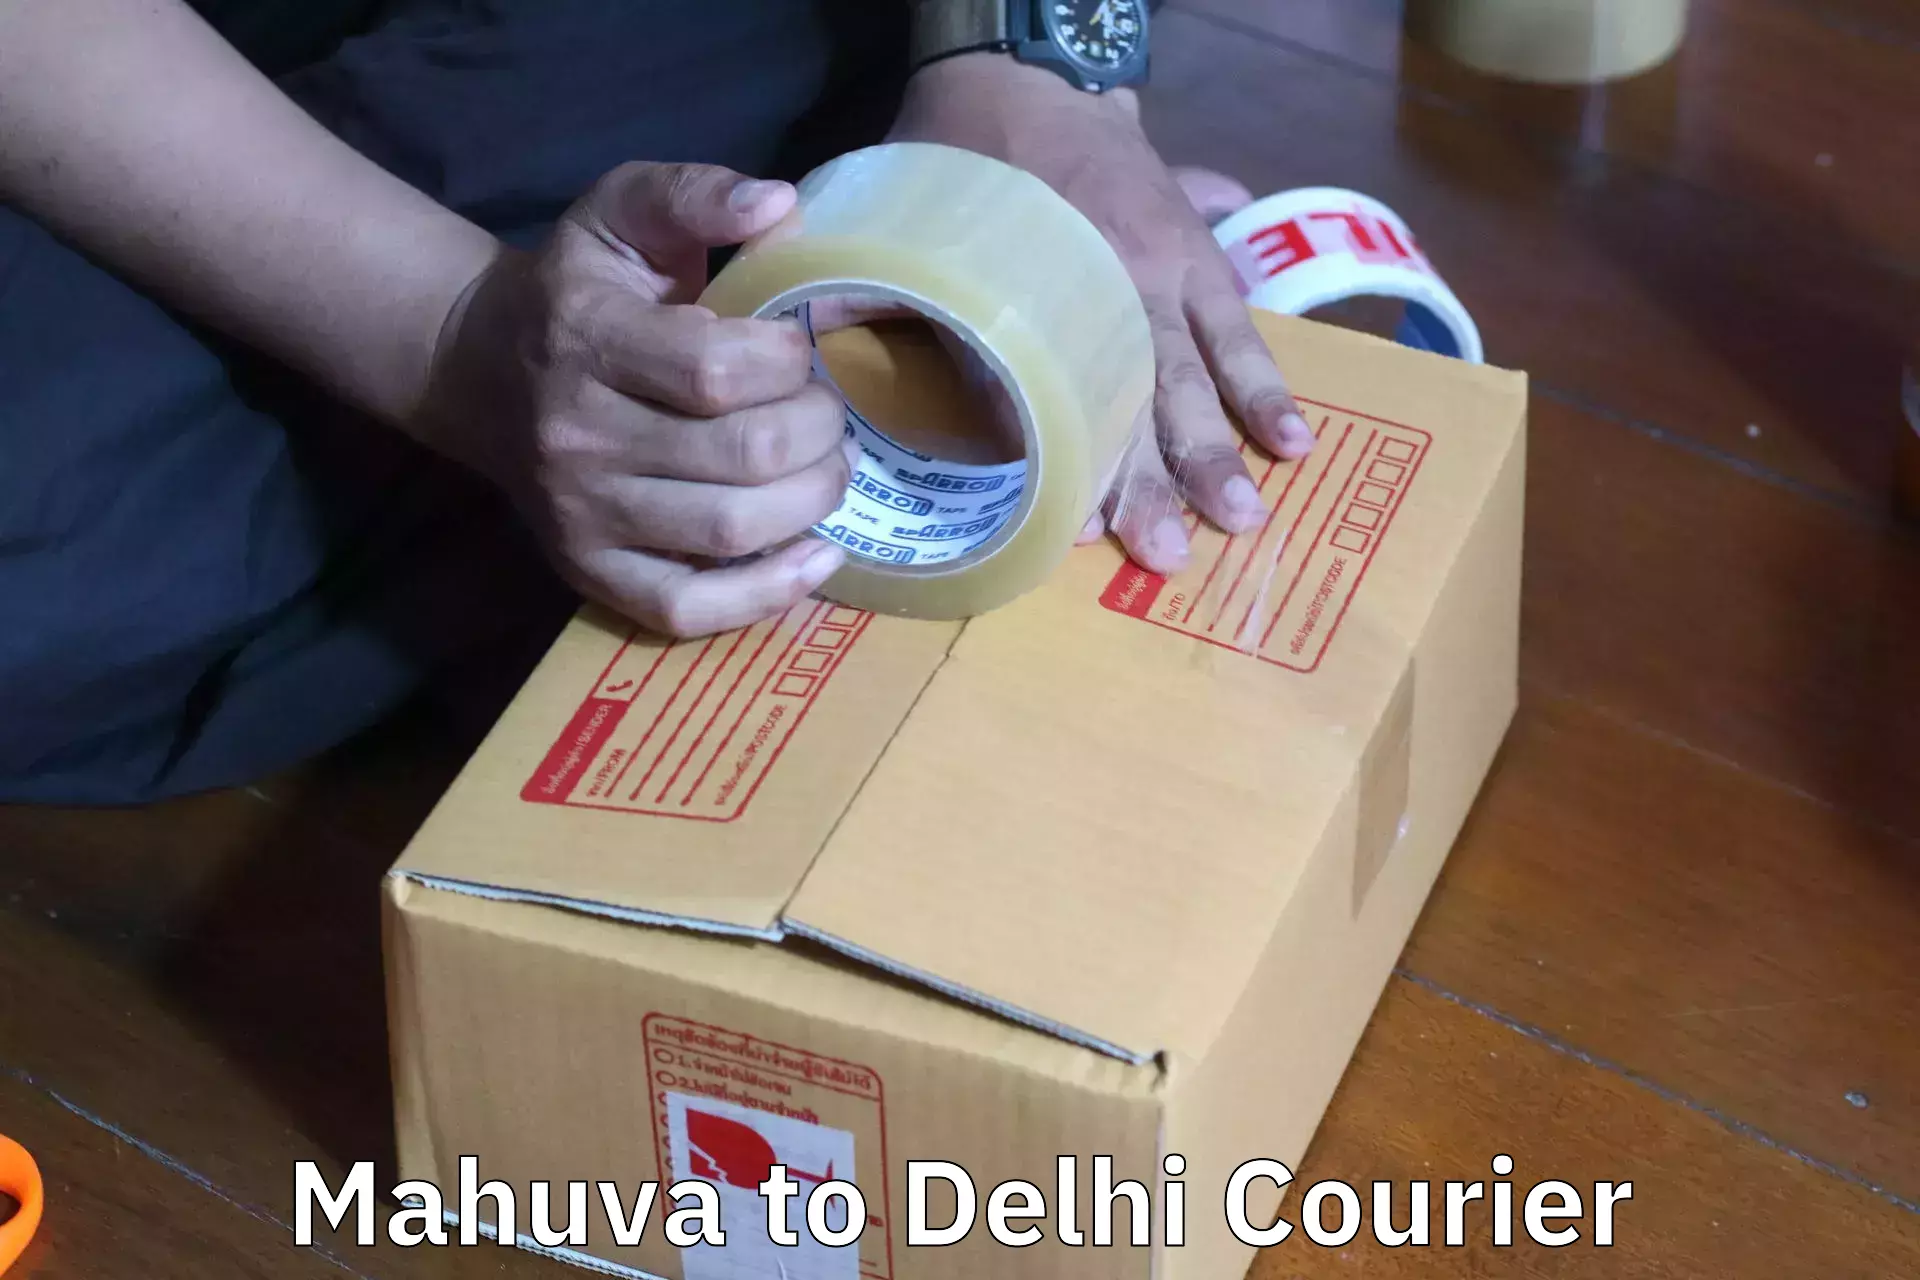 Full-service movers in Mahuva to University of Delhi